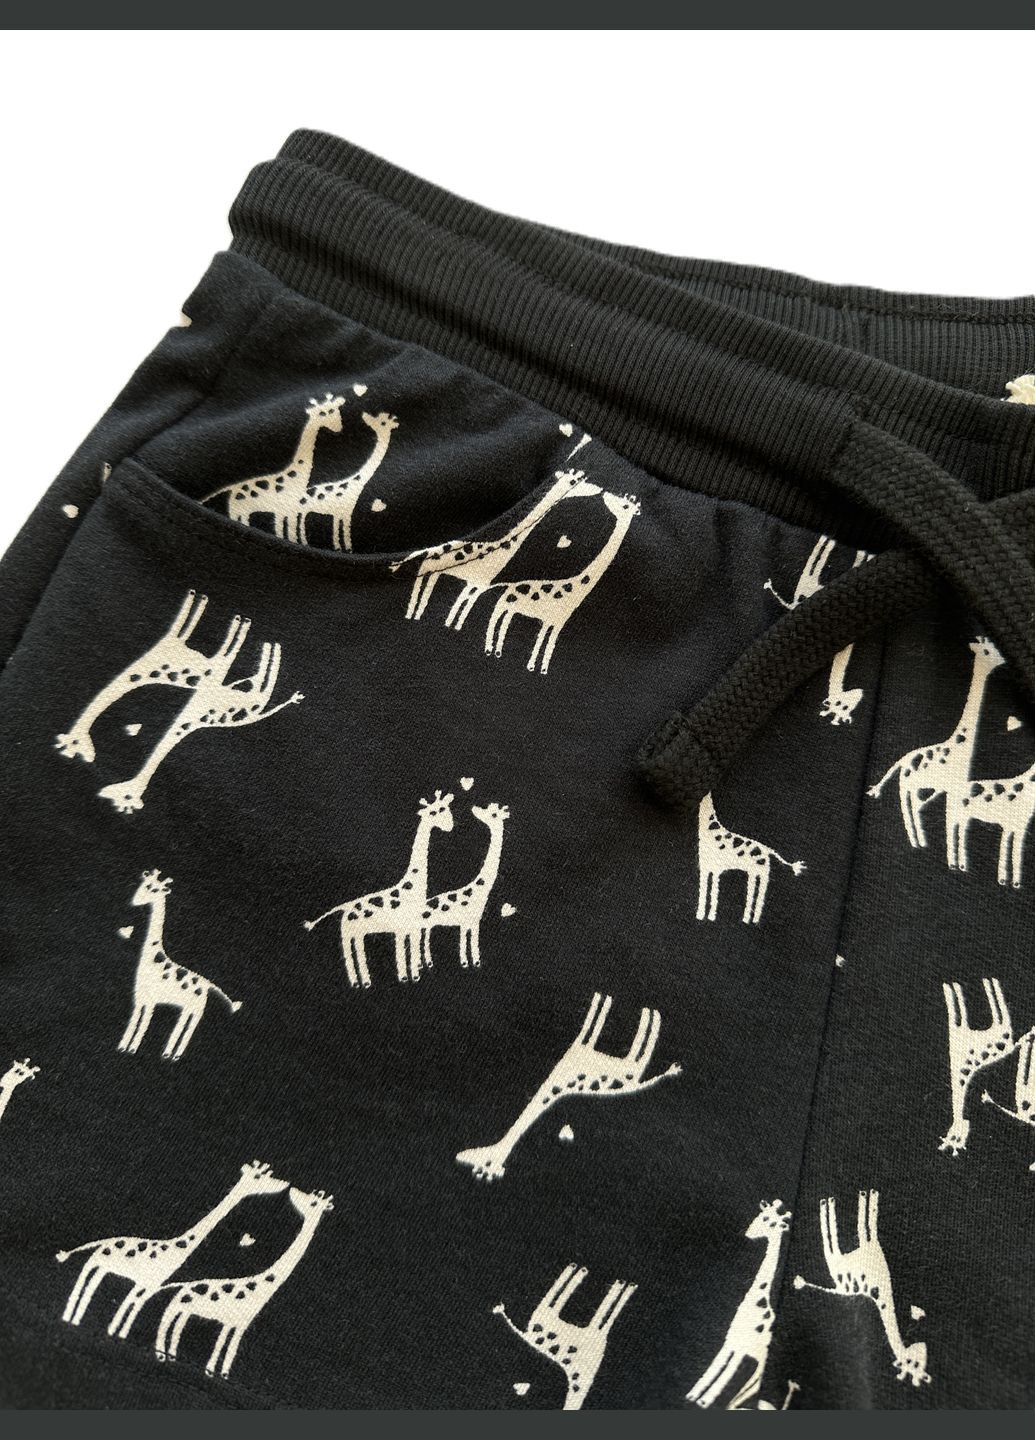 Пудровый летний комплект костюм для девочки футболка пудровая 2000-26+шорты черные трикотажные с жирафами 2000-25 (122 см) OVS